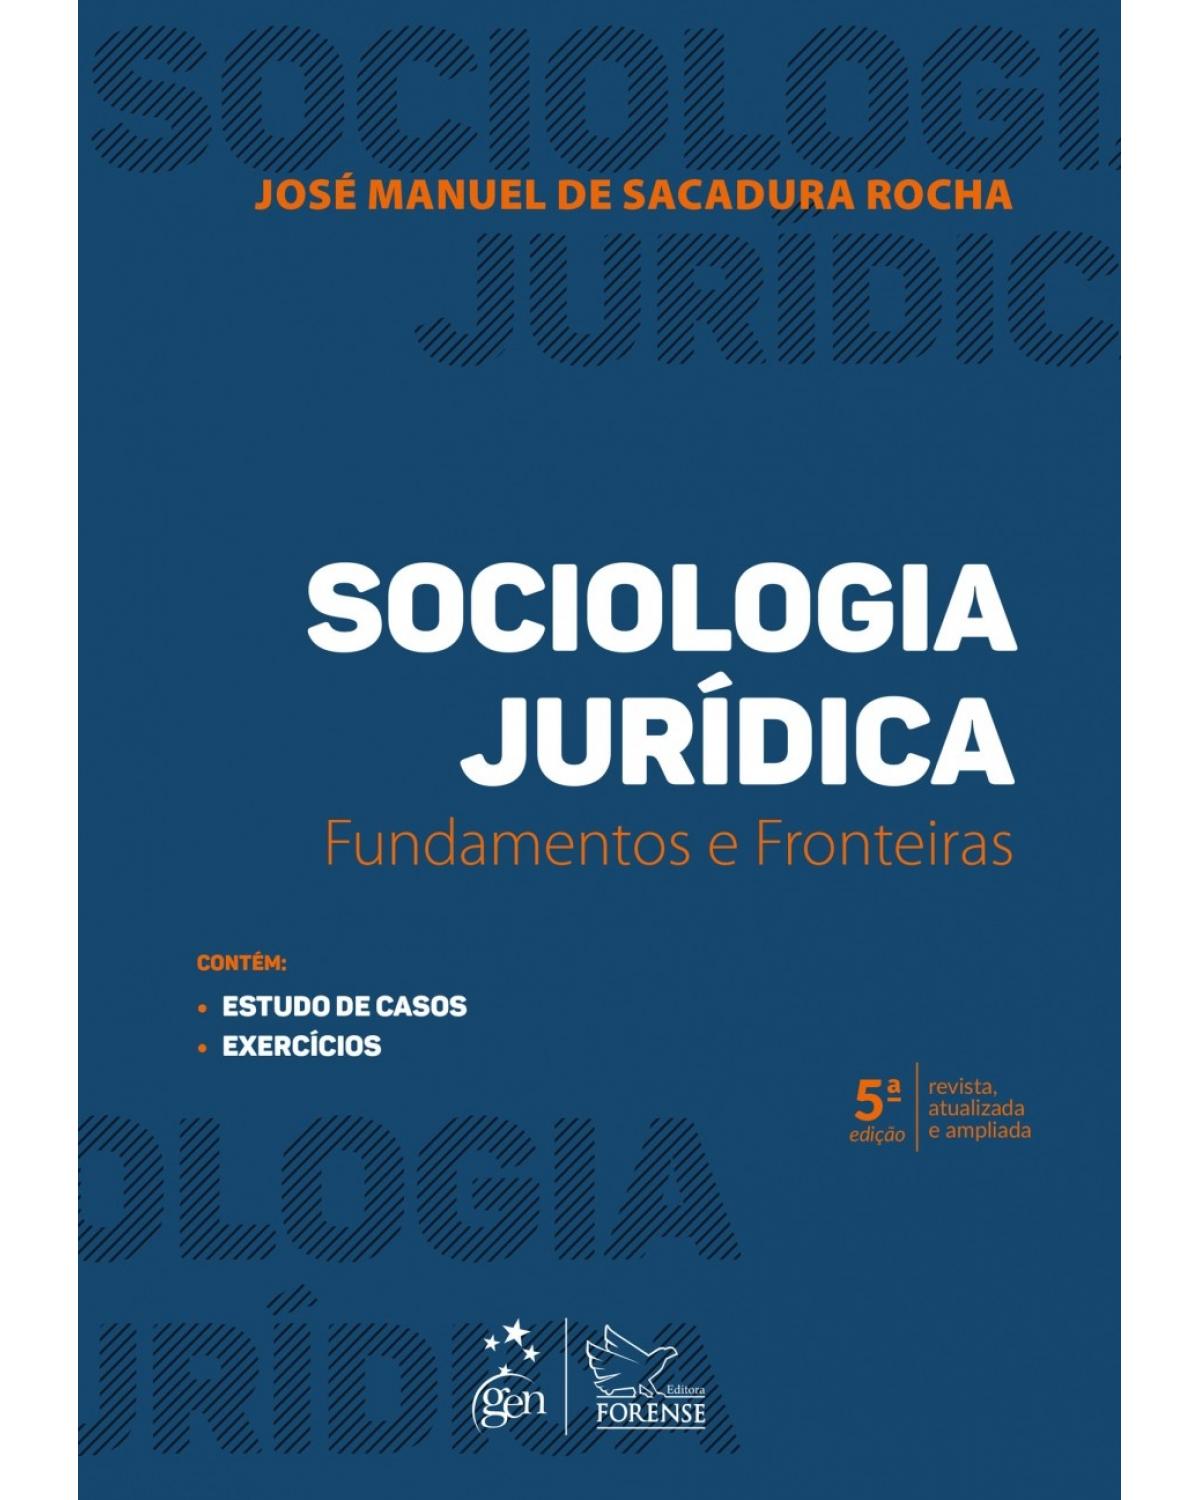 Sociologia jurídica - fundamentos e fronteiras - 5ª Edição | 2018